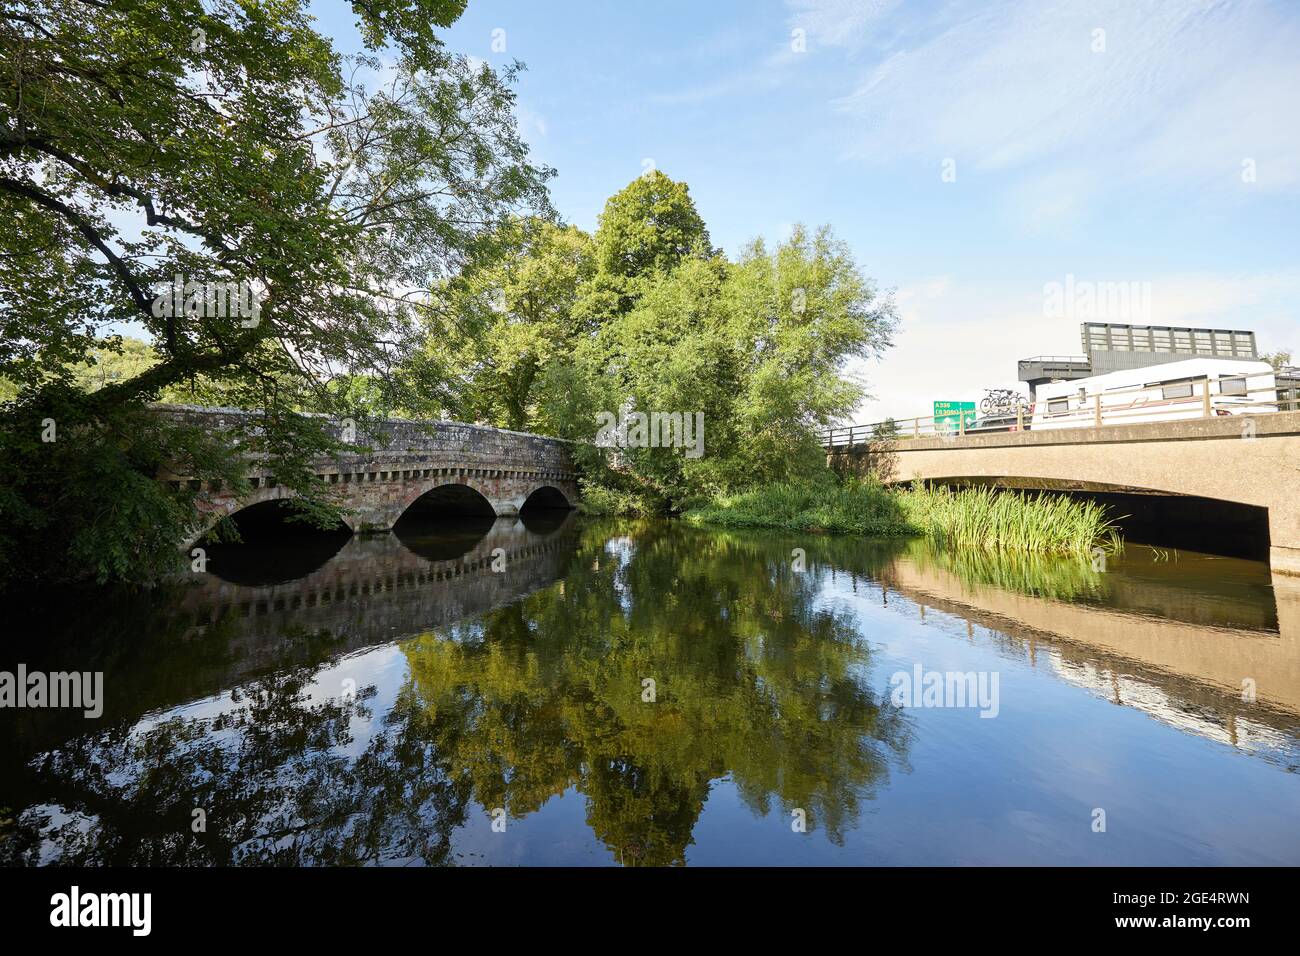 Ringwood, Großbritannien - 14. August 2021: Eine C20-Betonbrücke führt den Verkehr an der Hampshire-Stadt Ringwood vorbei und vermeidet so die traditionelle Route über eine dreigewölbte, unter Denkmalschutz stehende Brücke aus dem 19. Jahrhundert. Stockfoto